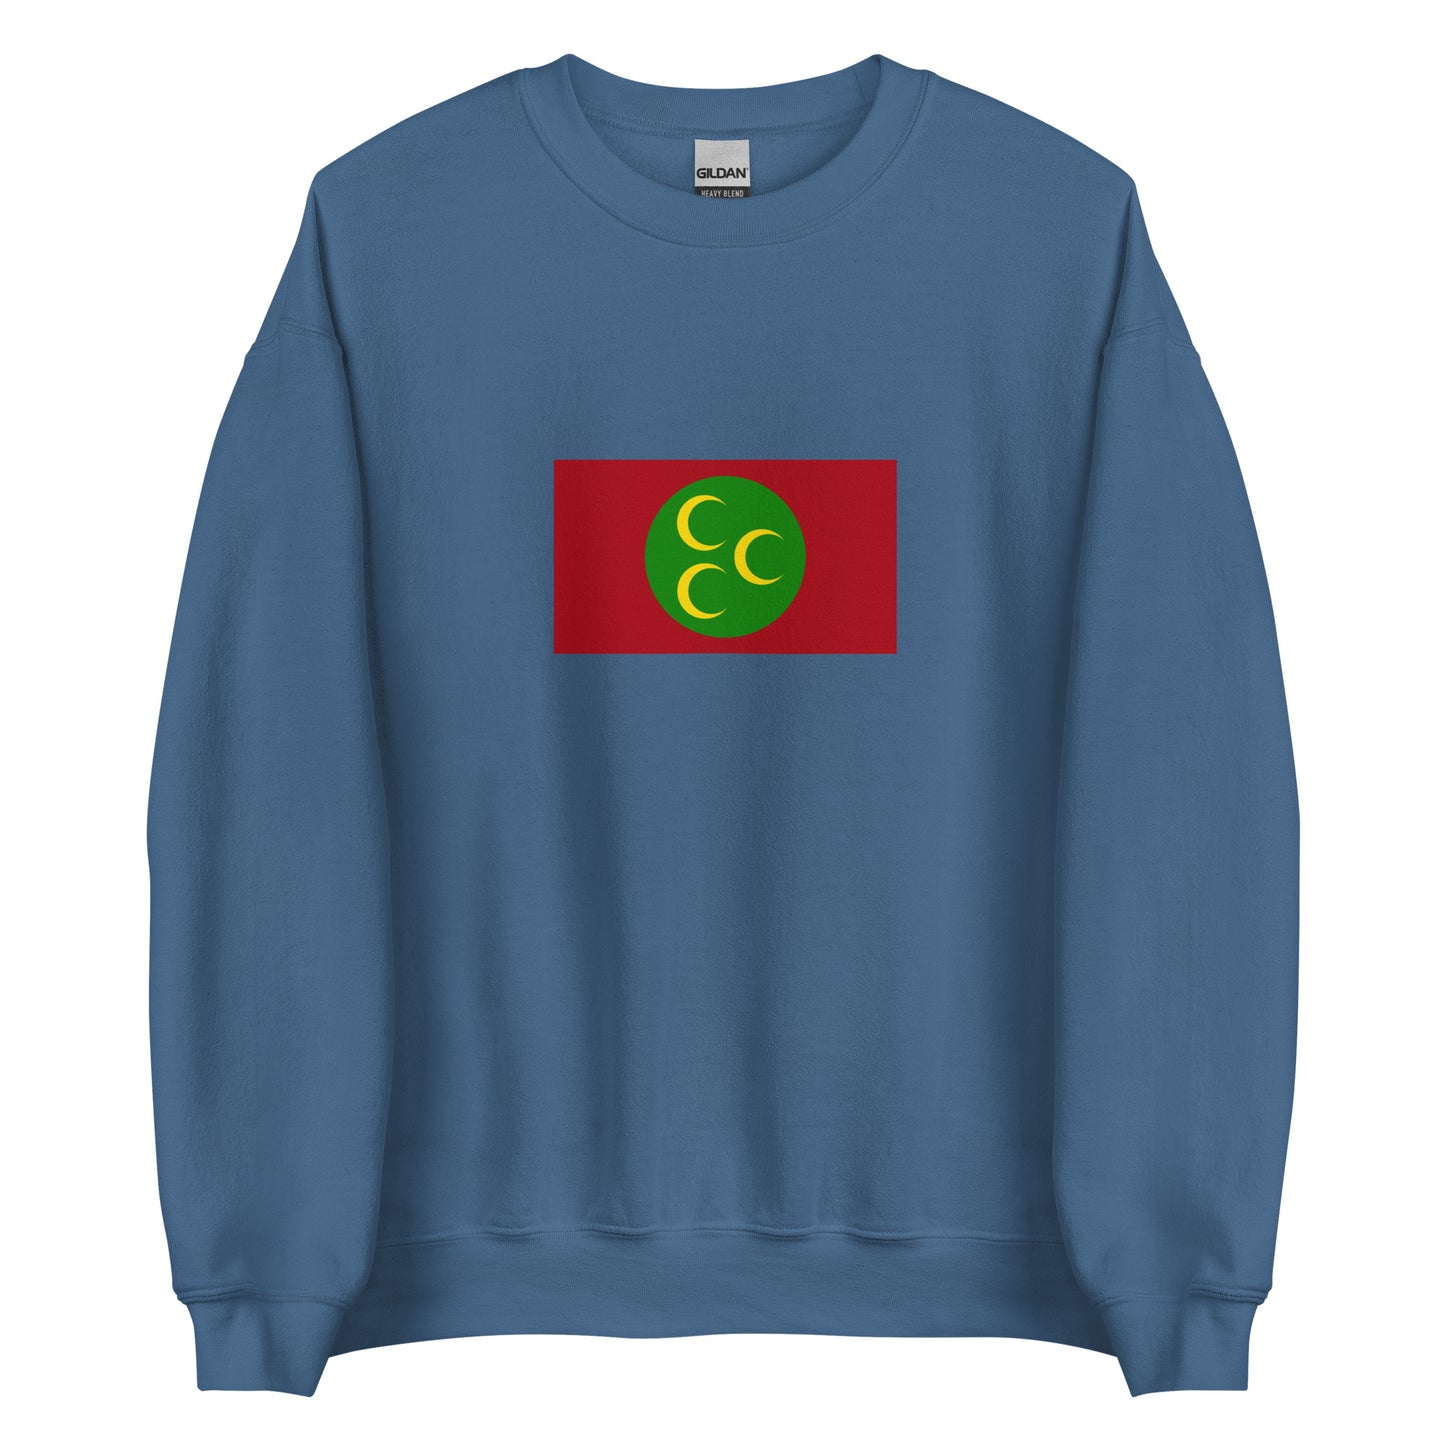 Ottoman Arabia (1517-1918) | Saudi Arabia Flag Interactive History Sweatshirt